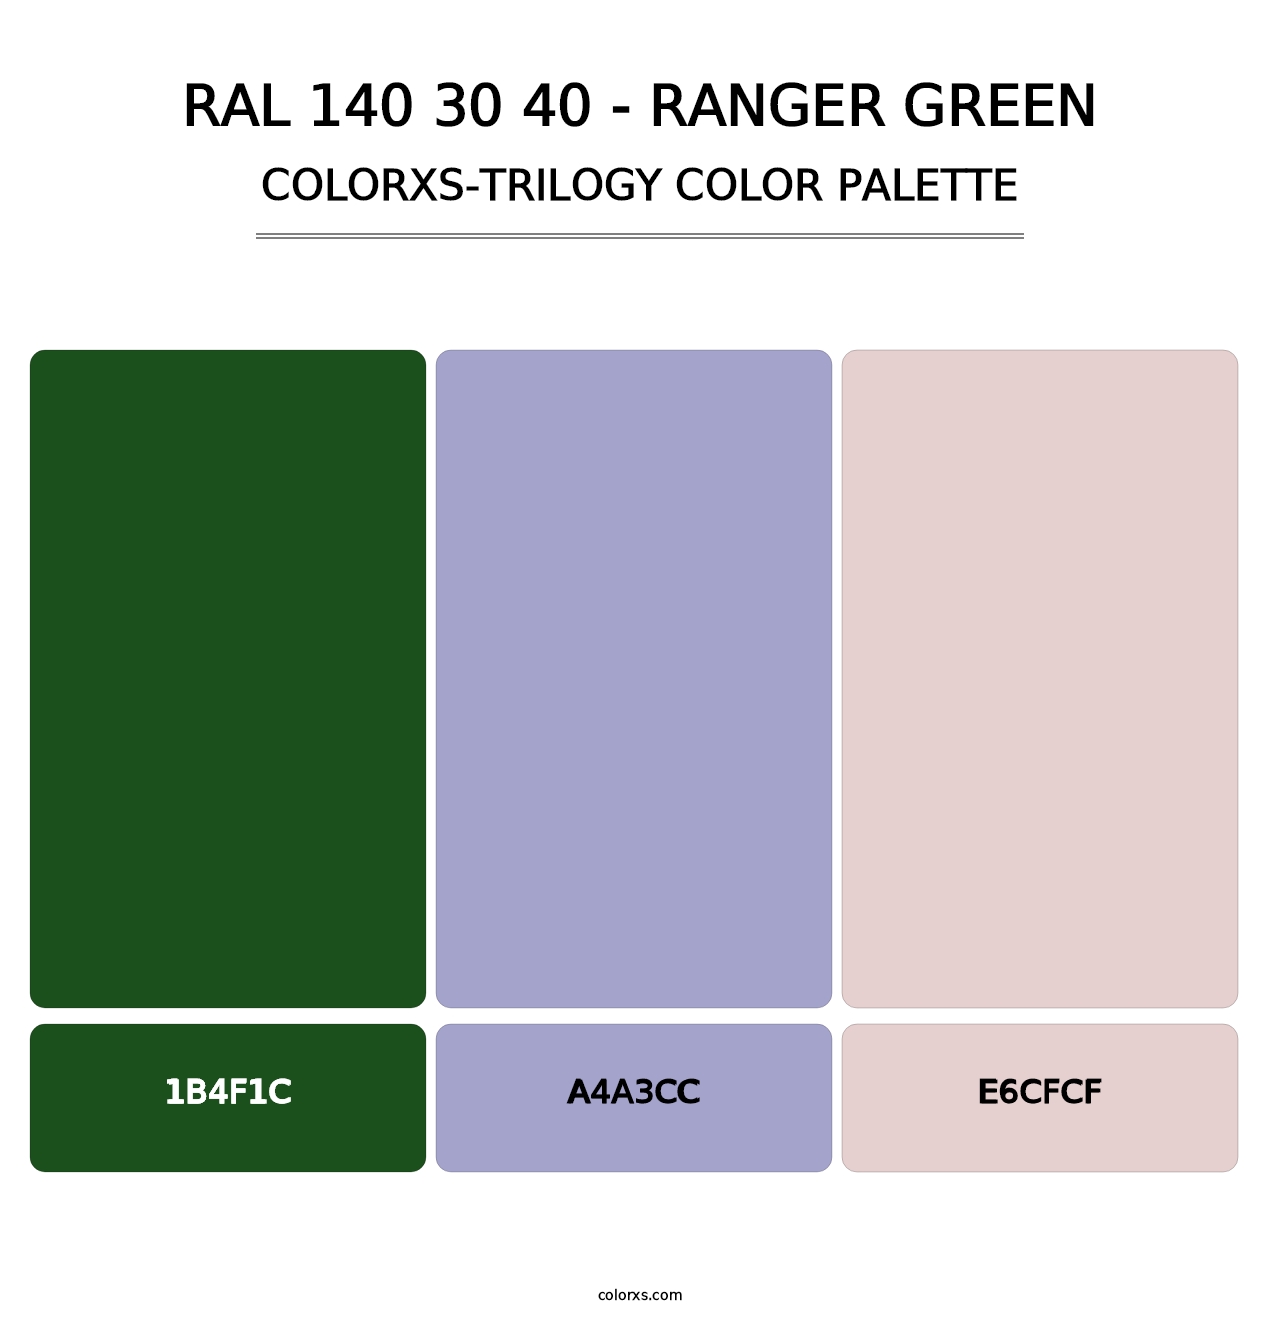 RAL 140 30 40 - Ranger Green - Colorxs Trilogy Palette